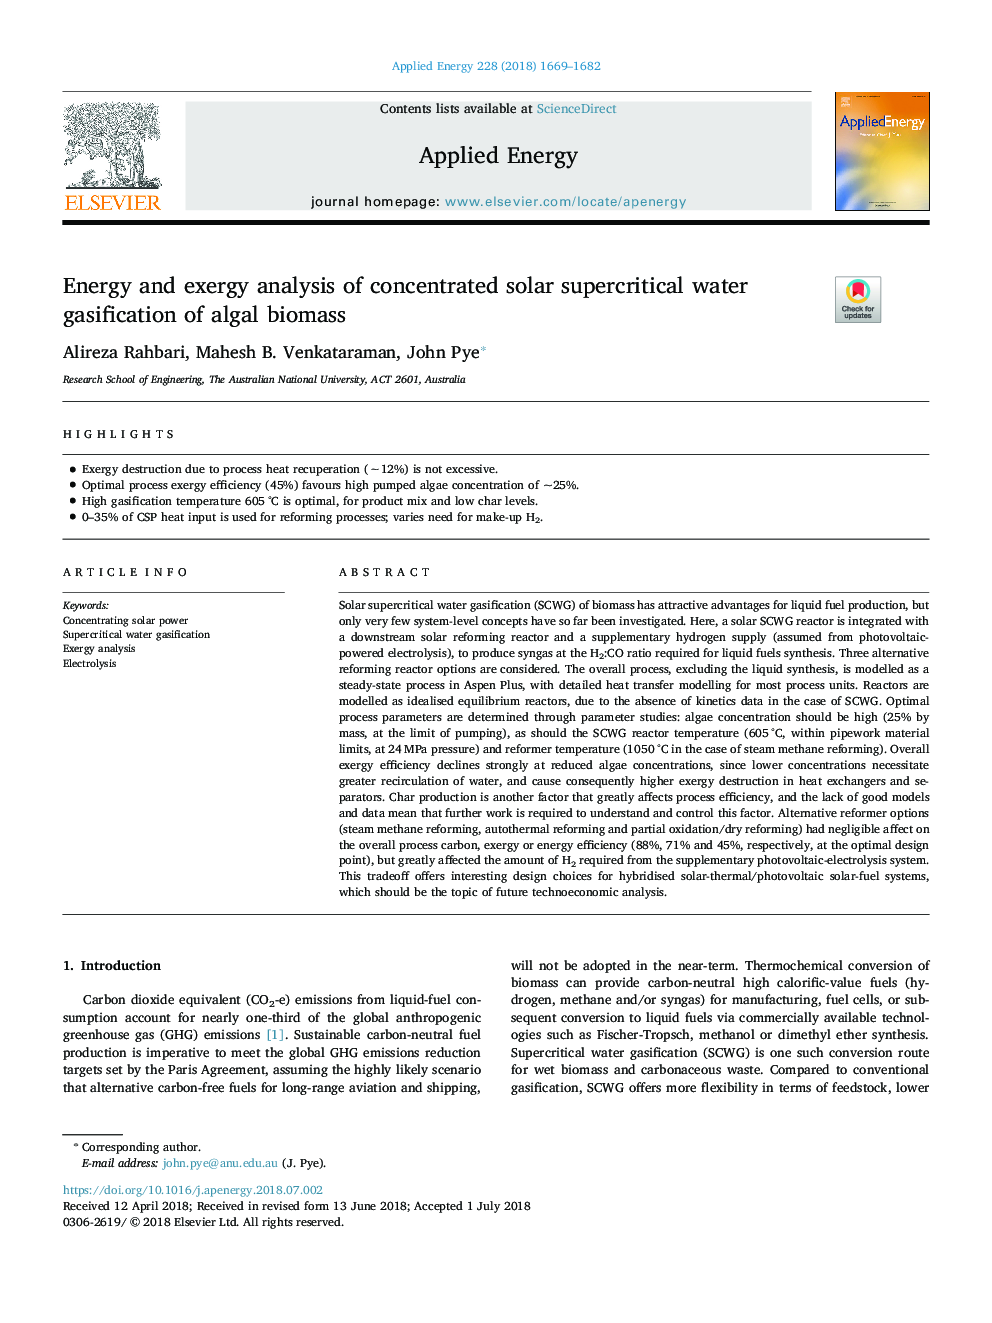 تجزیه و تحلیل انرژی و اکسرژی غربالگری انرژی فوق بحرانی آب گرم از زیست توده جلبک دریایی 